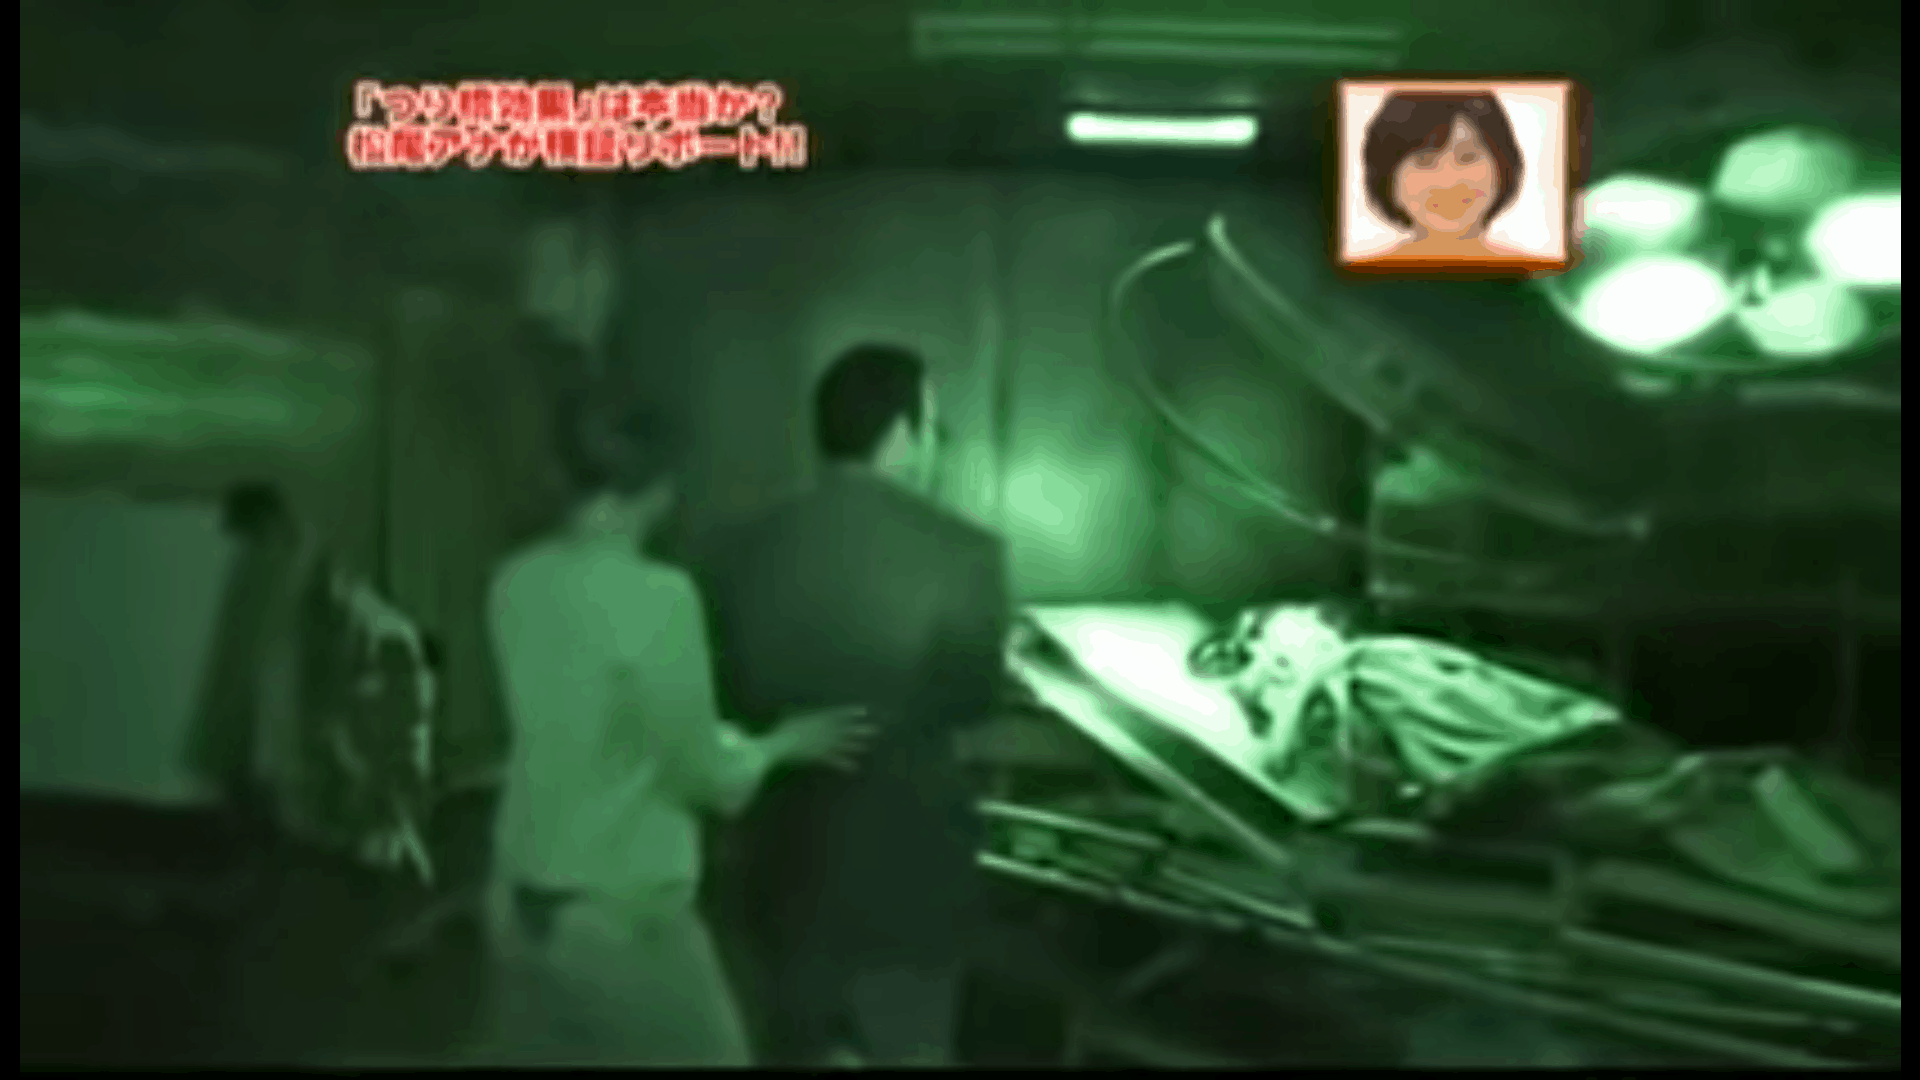 รายการญี่ปุ่นก็เคยไปถ่ายทำรายการกันที่ Horror Labyrinth